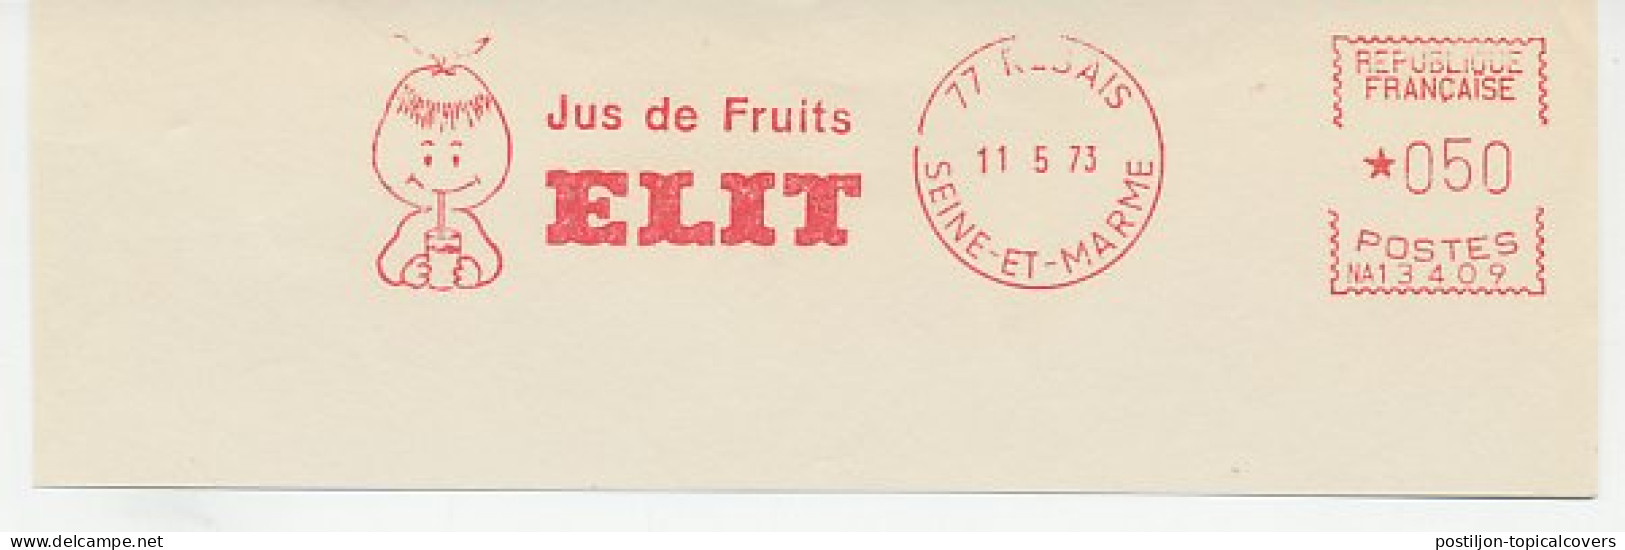 Meter Cut France 1973 Fruit Drink - Obst & Früchte